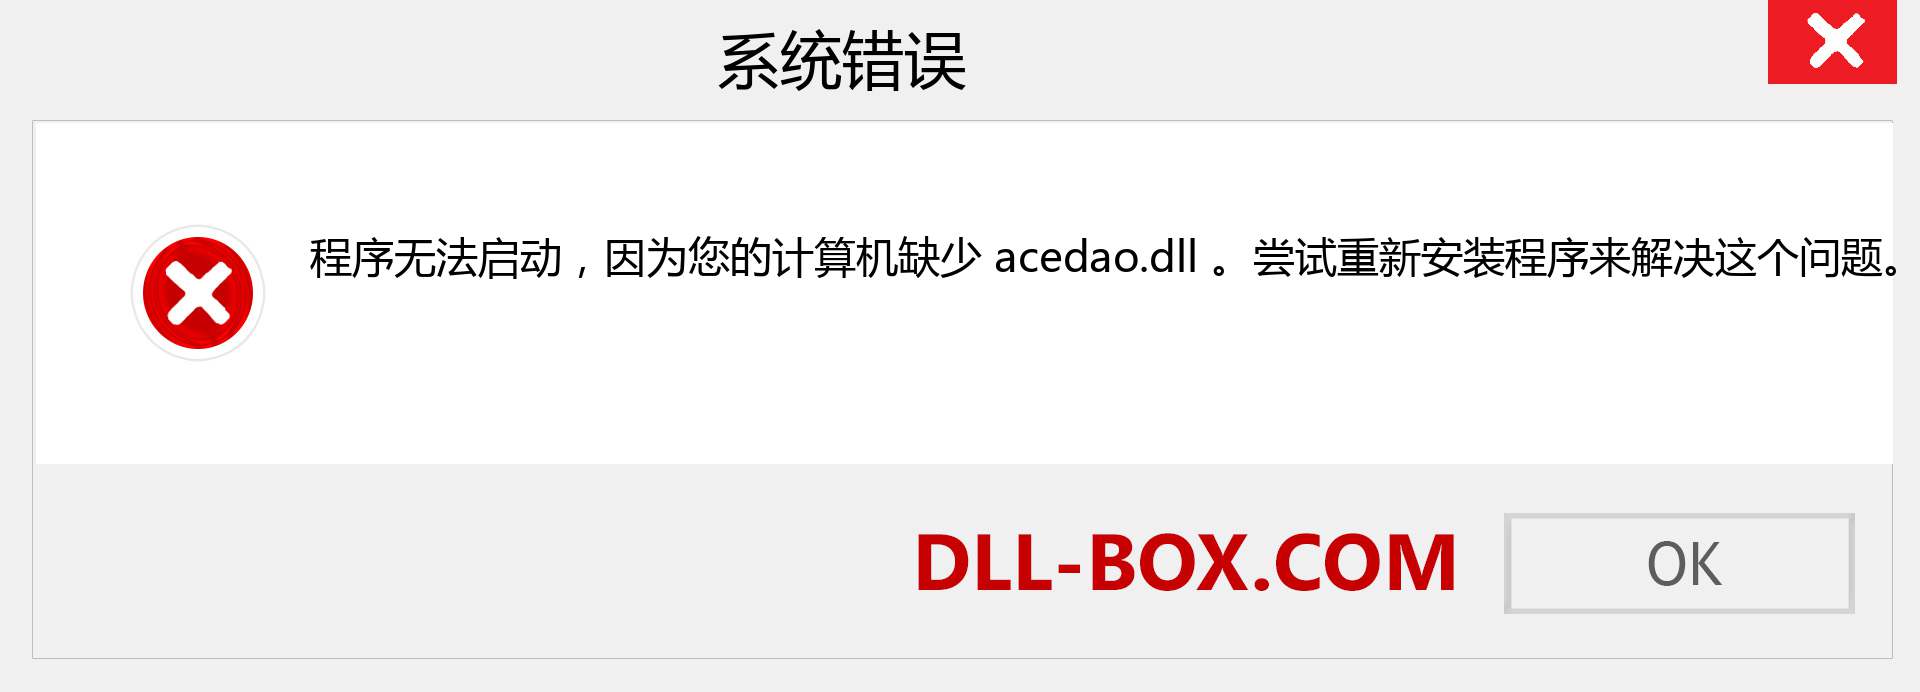 acedao.dll 文件丢失？。 适用于 Windows 7、8、10 的下载 - 修复 Windows、照片、图像上的 acedao dll 丢失错误